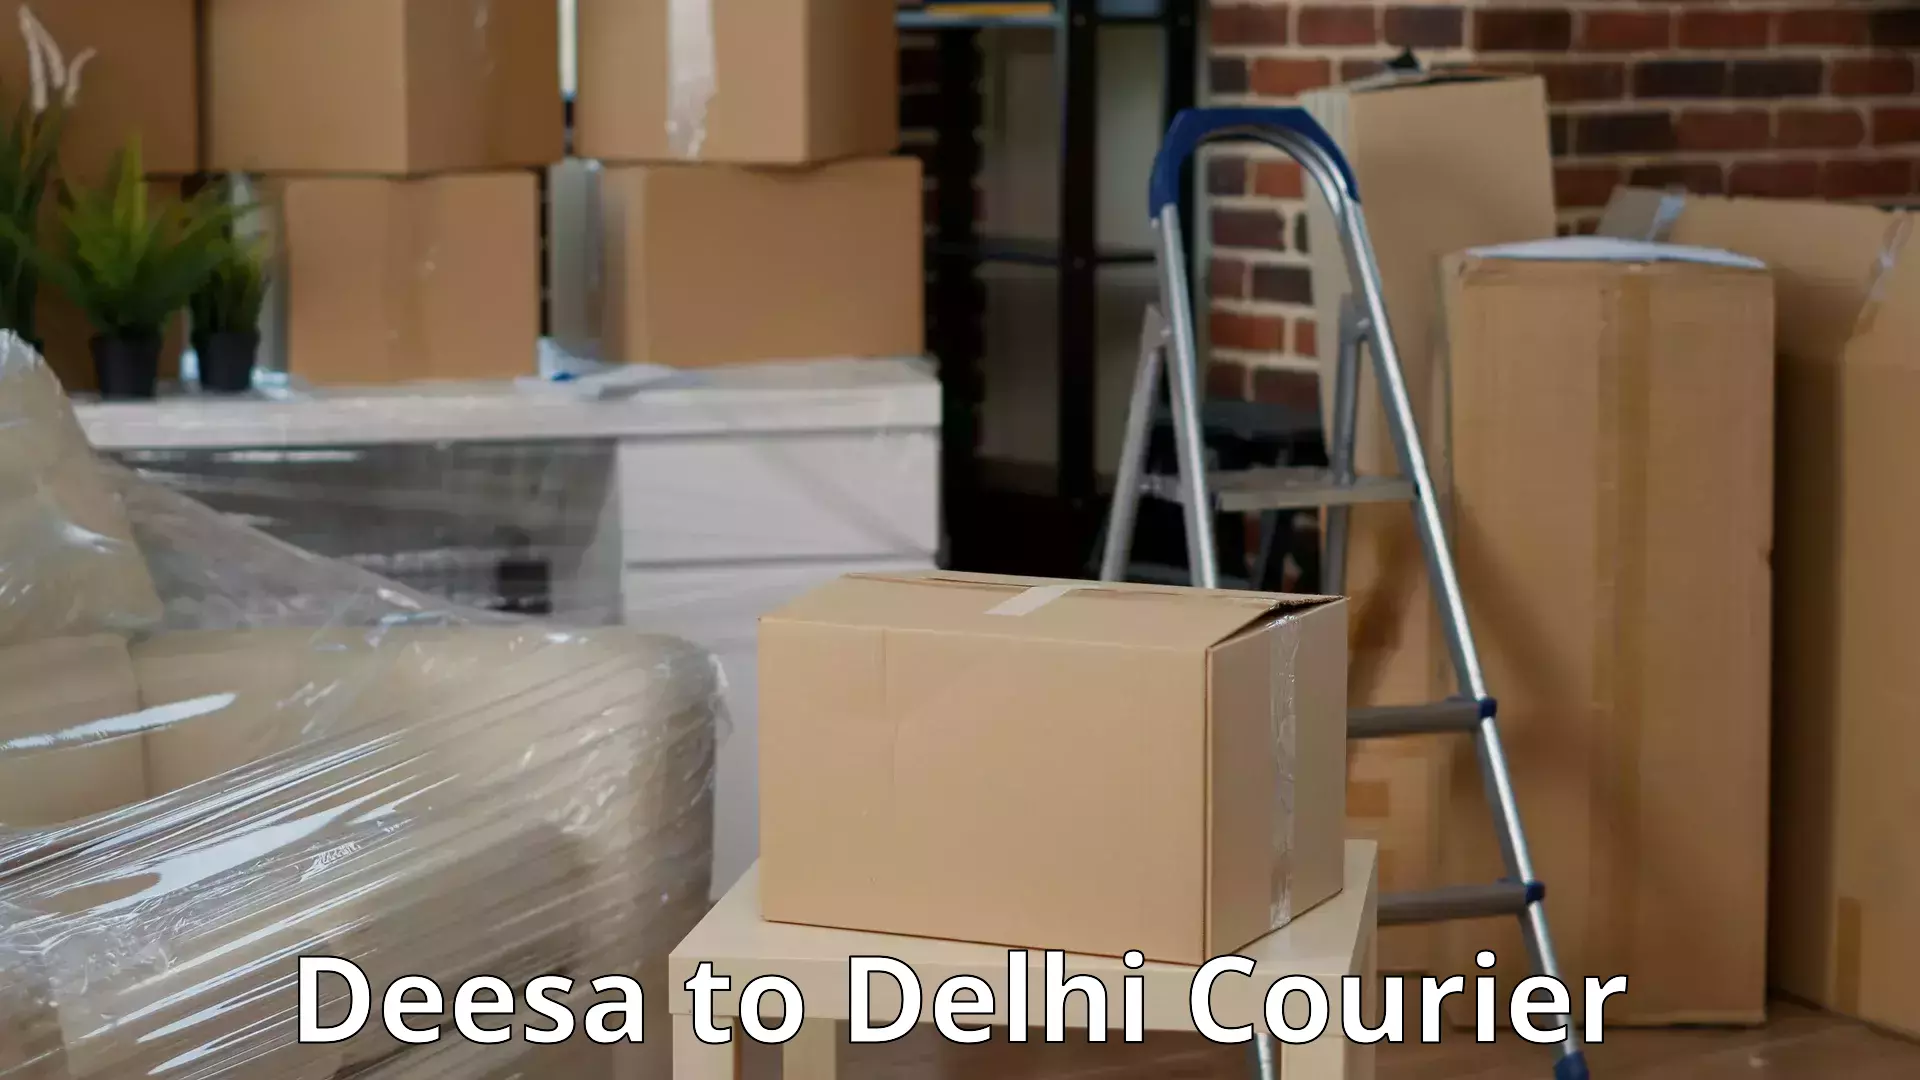 Furniture transport professionals Deesa to Delhi